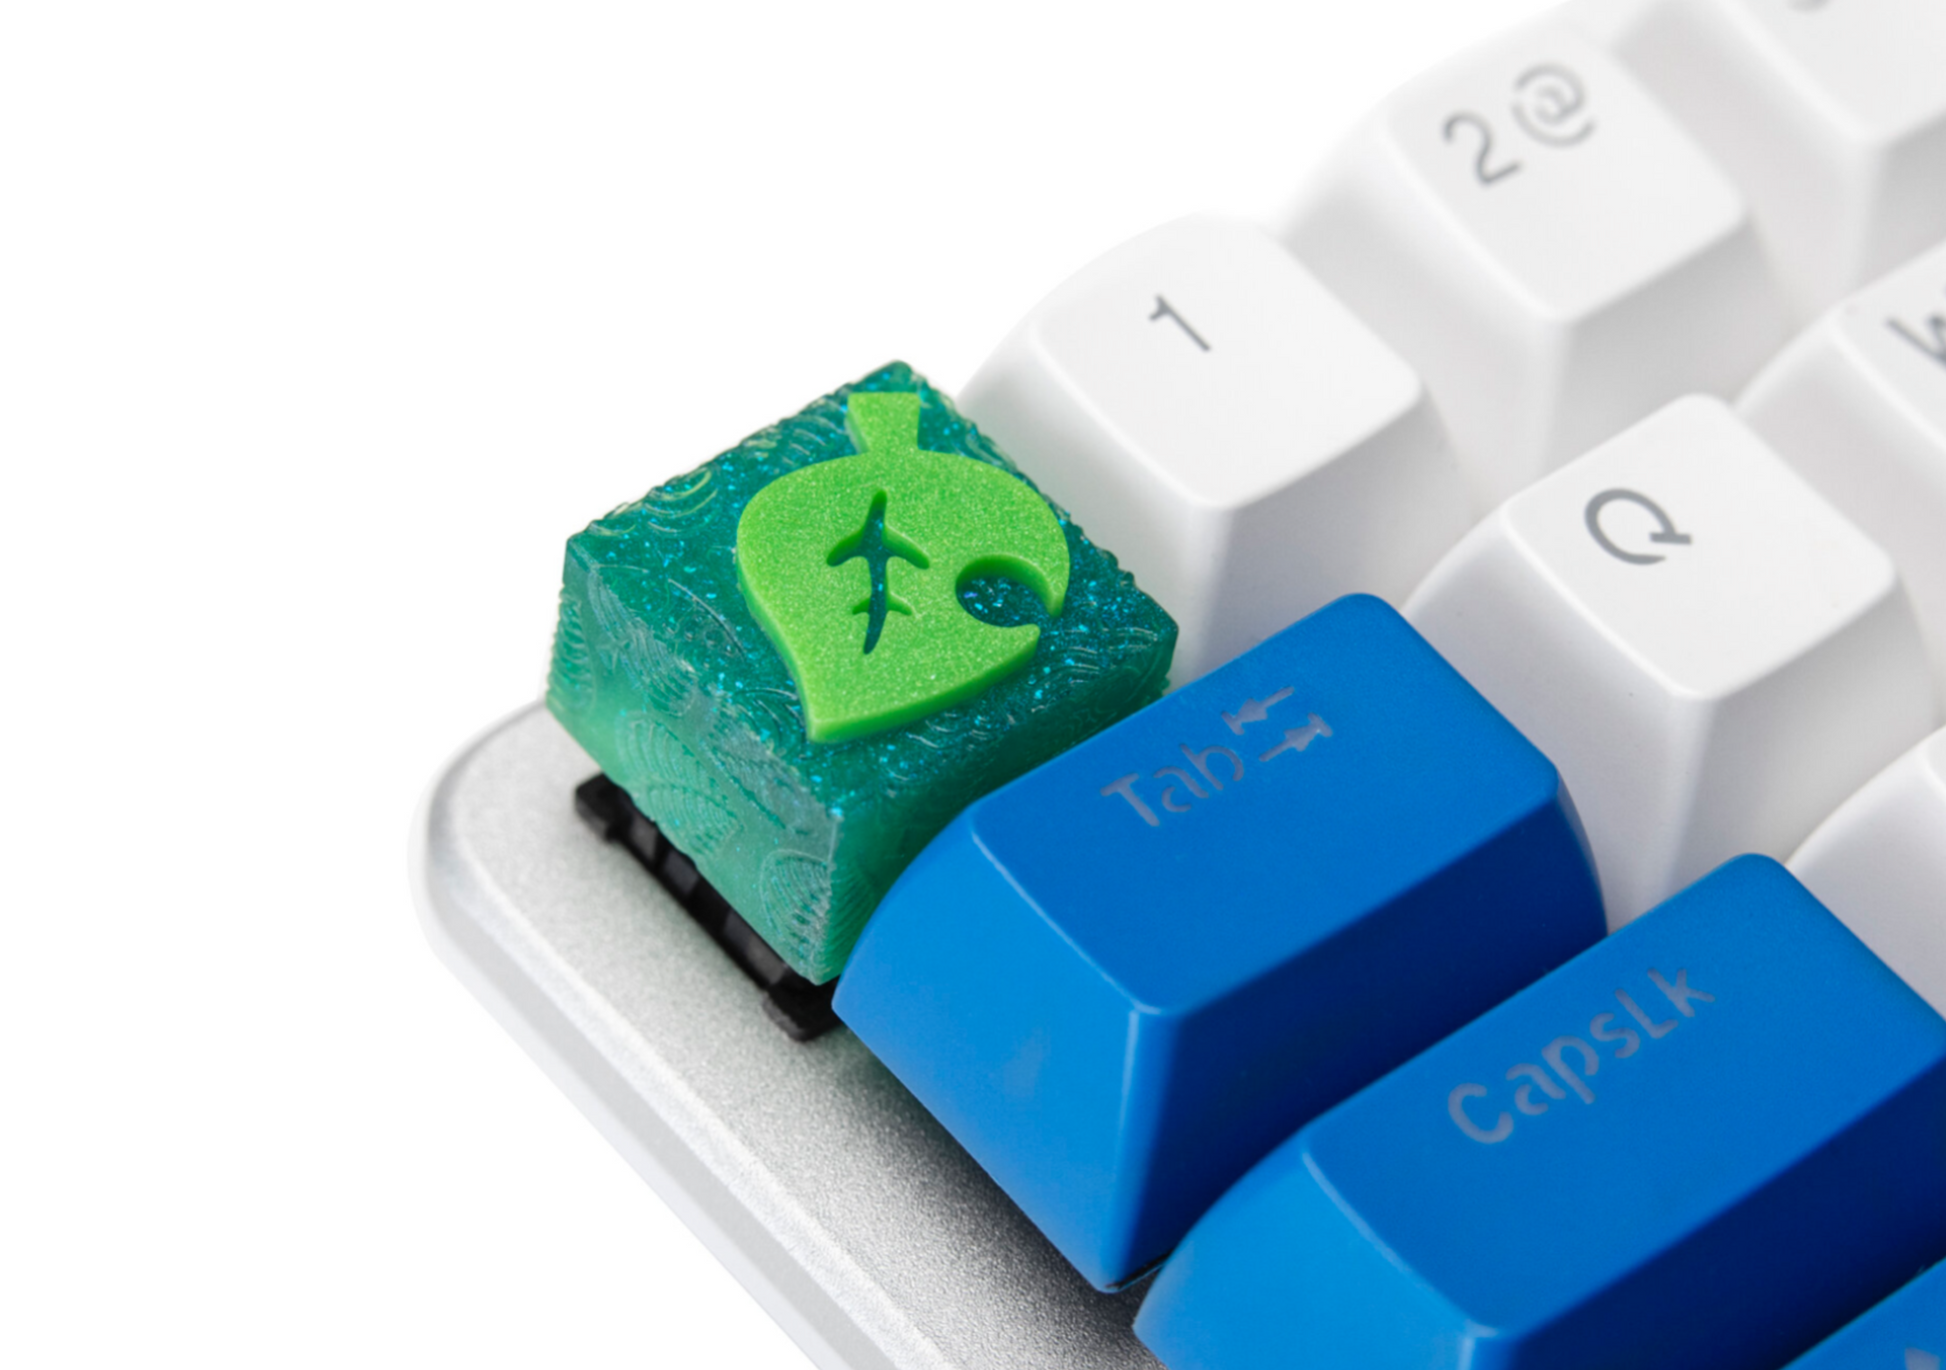 AC leaf cube keycap on keyboard